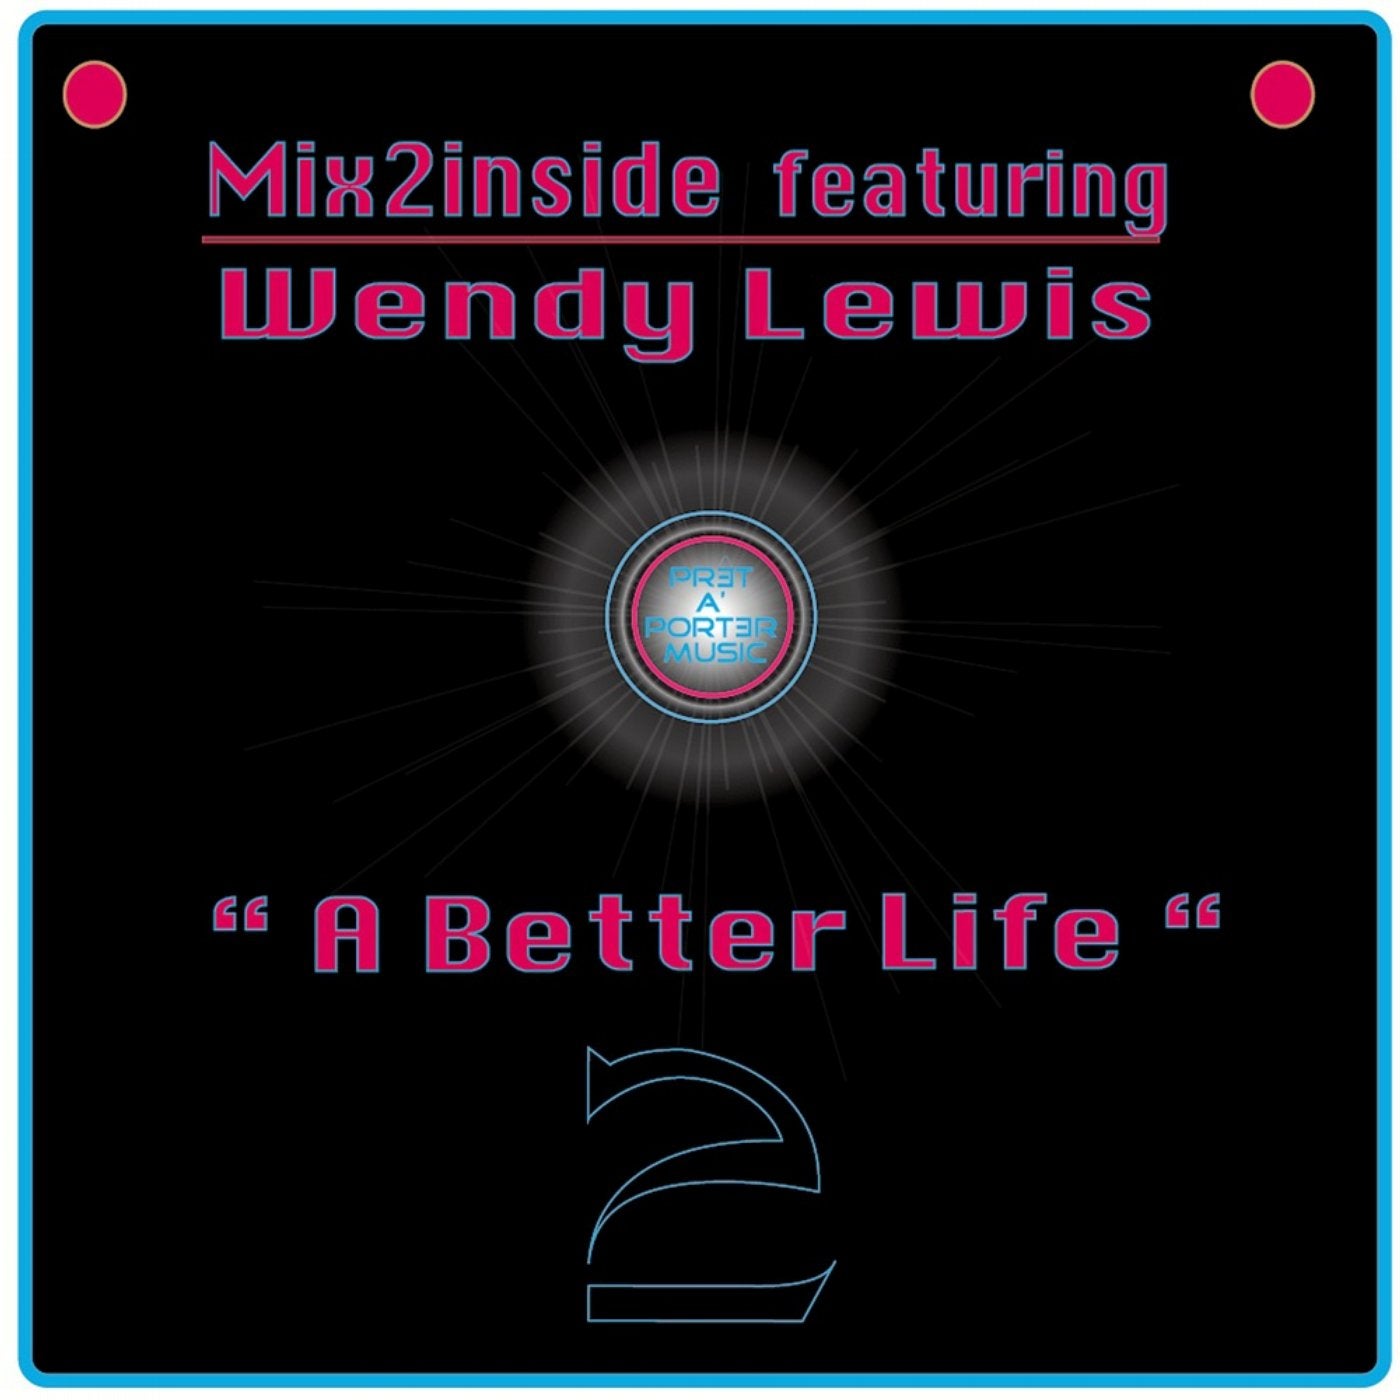 A Better Life (Wmc Remixes)